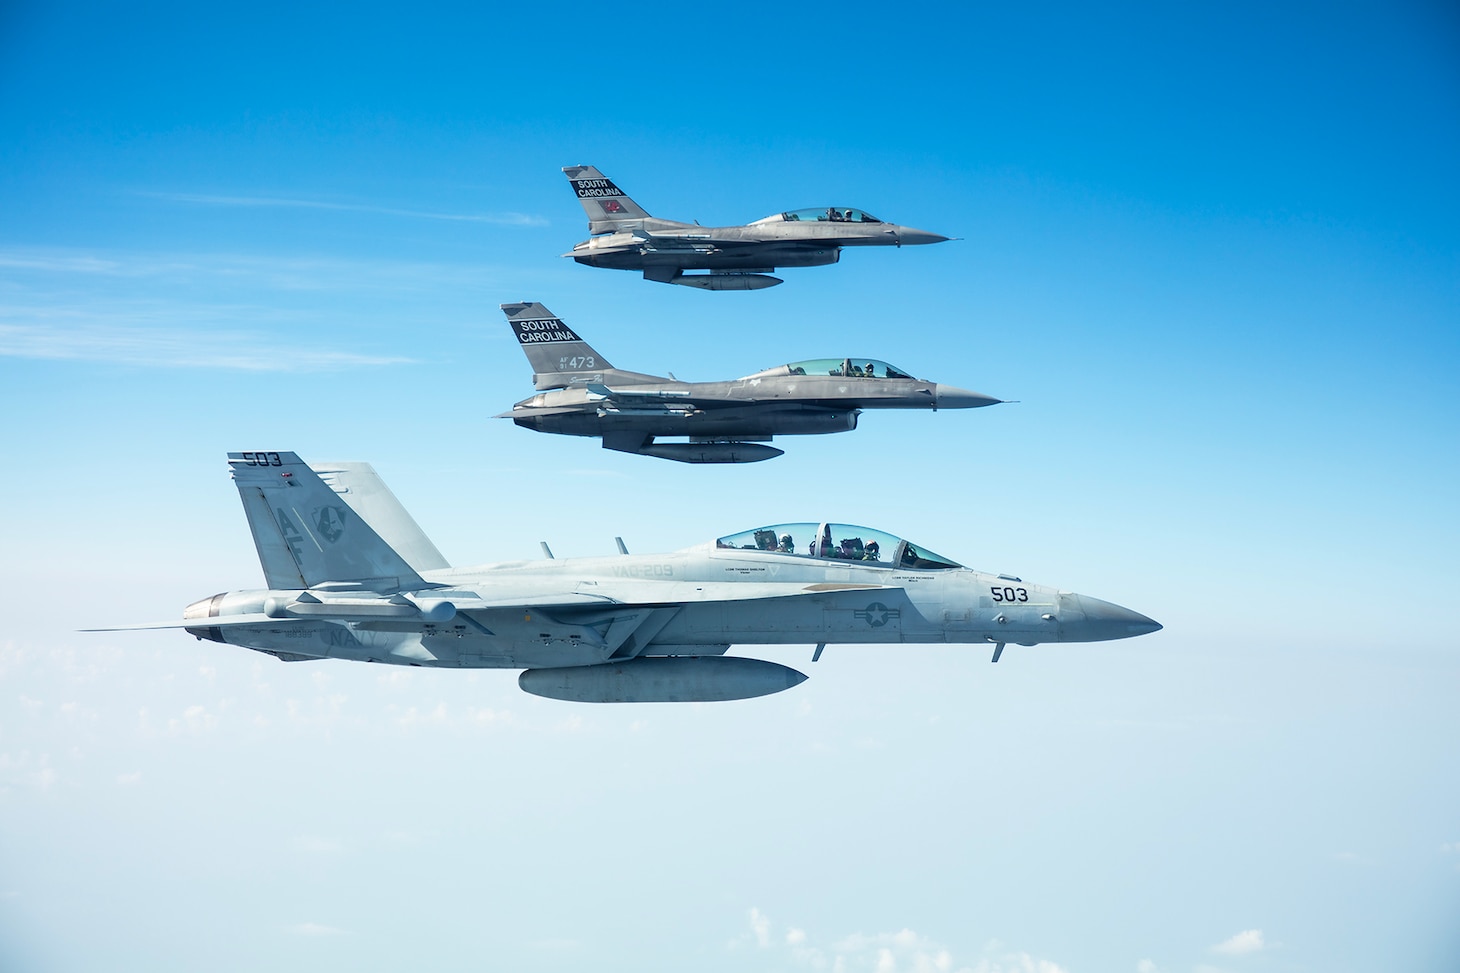 A Navy Reserve E/A-18G Growler flies alongside two Air National Guard F-18 Super Hornets